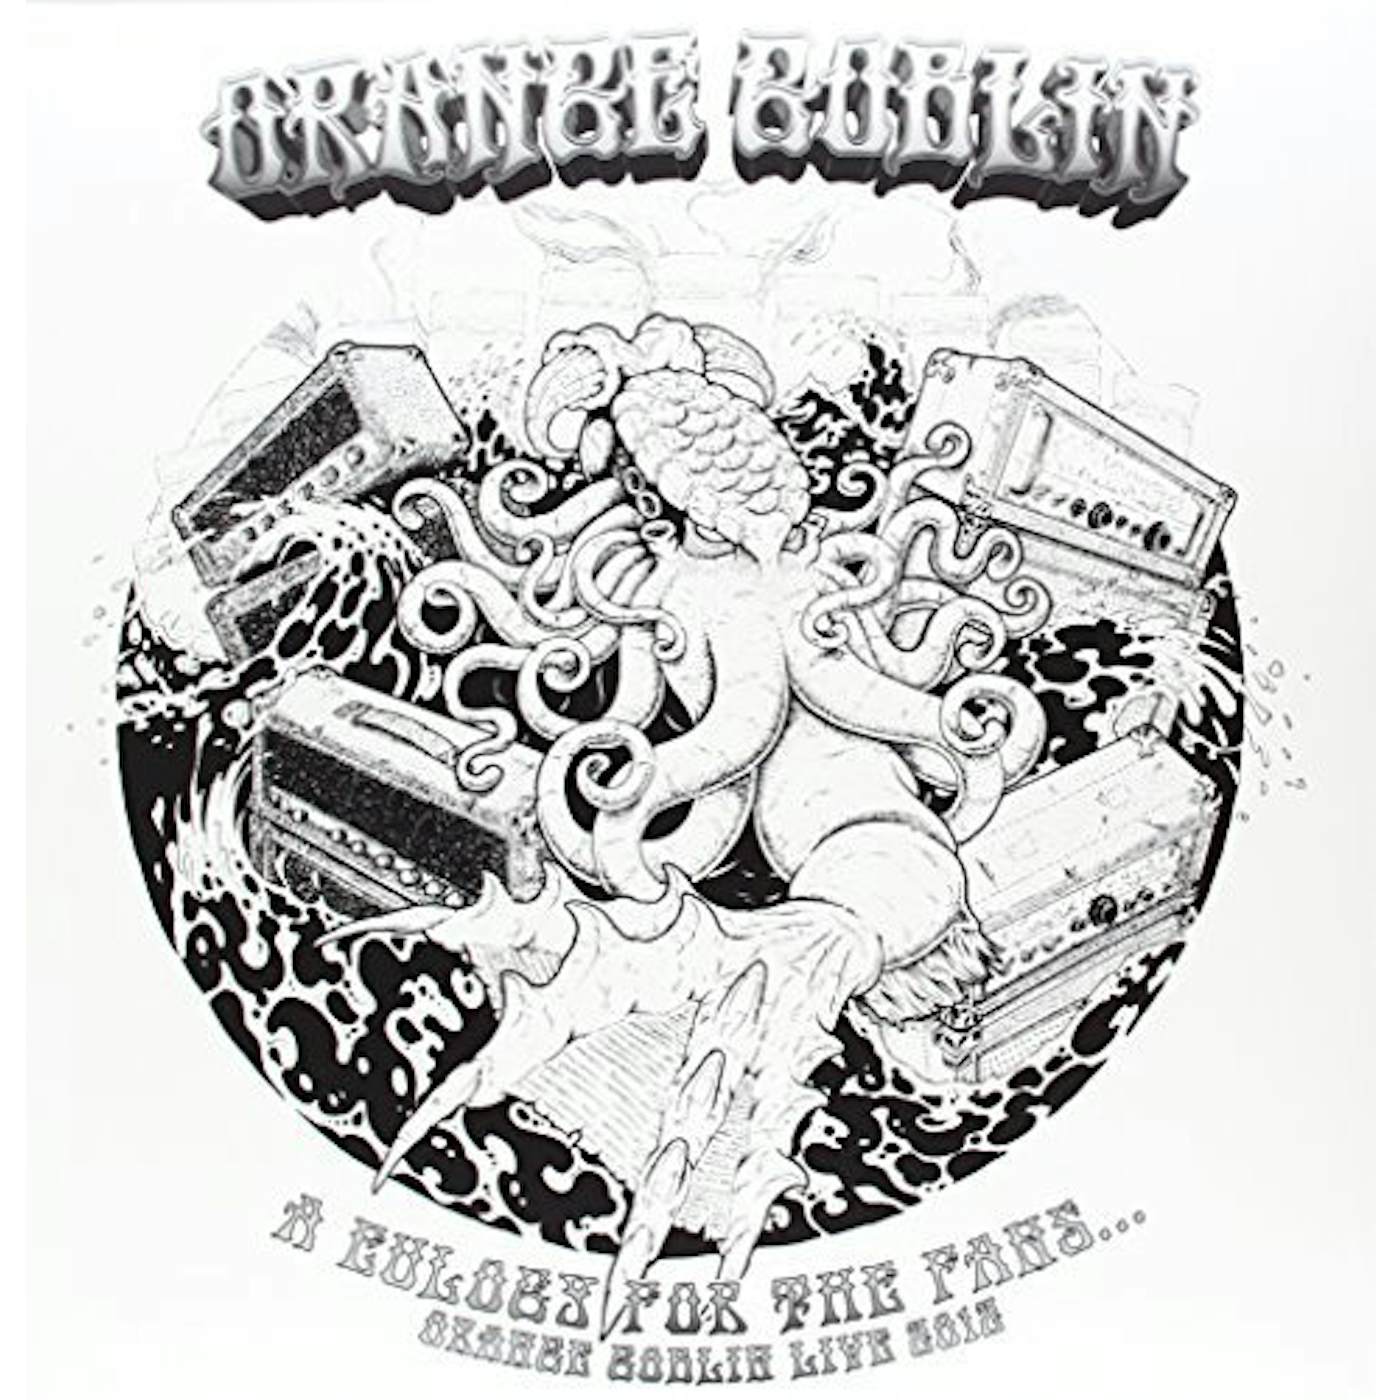 EULOGY FOR THE FANS ORANGE GOBLIN: LIVE 2012 Vinyl Record